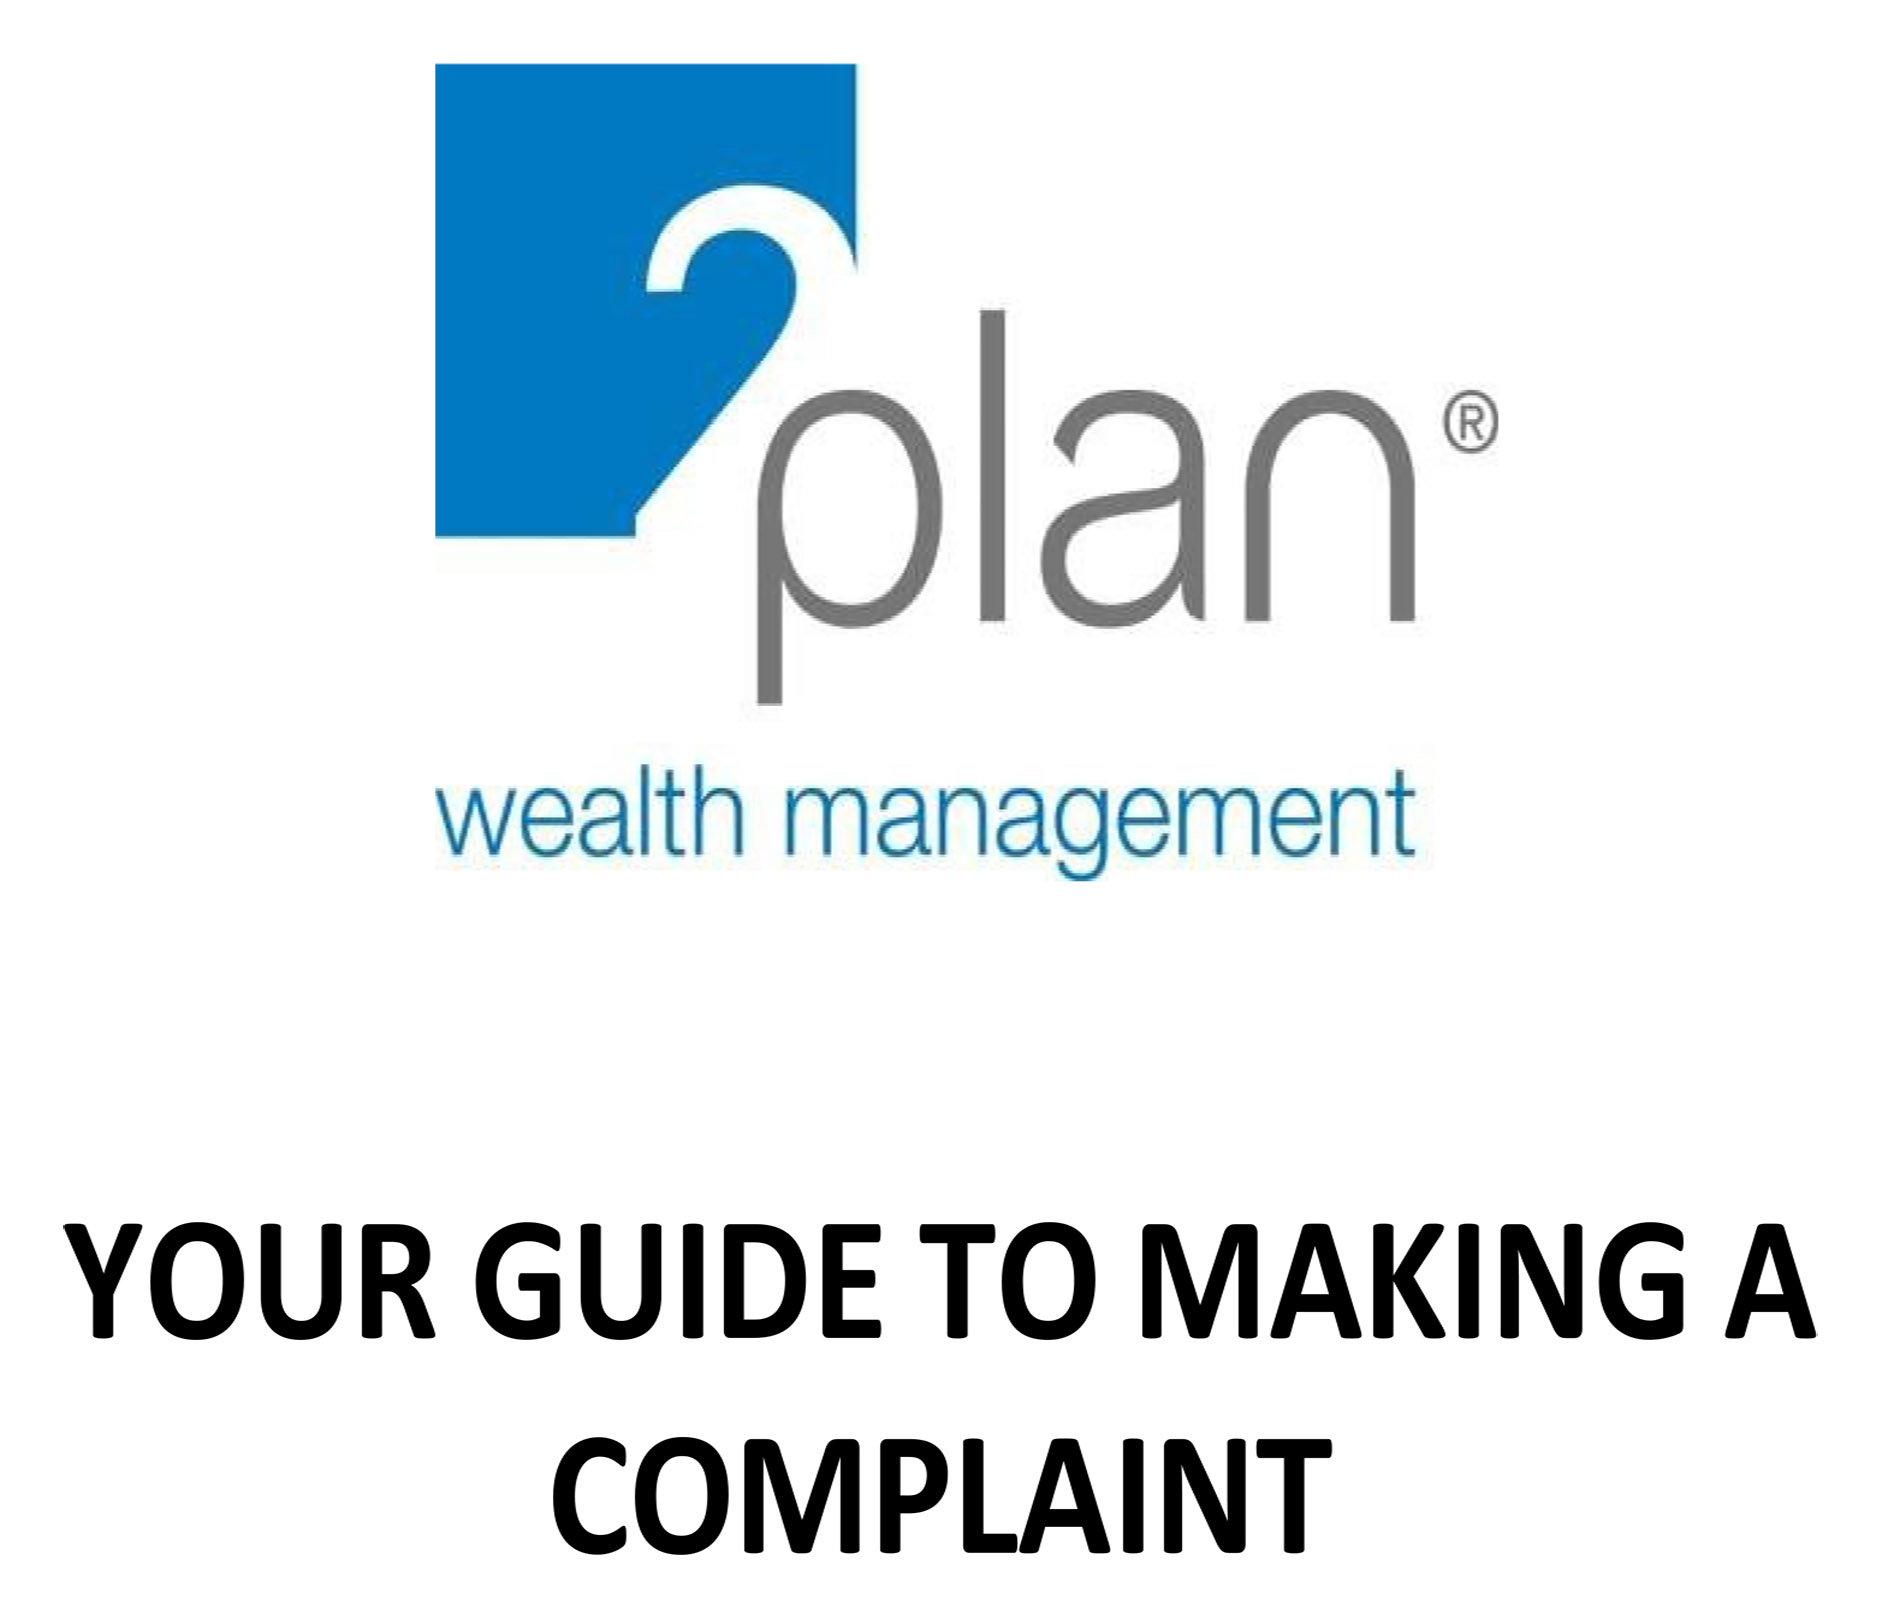 2Plan complaints guide